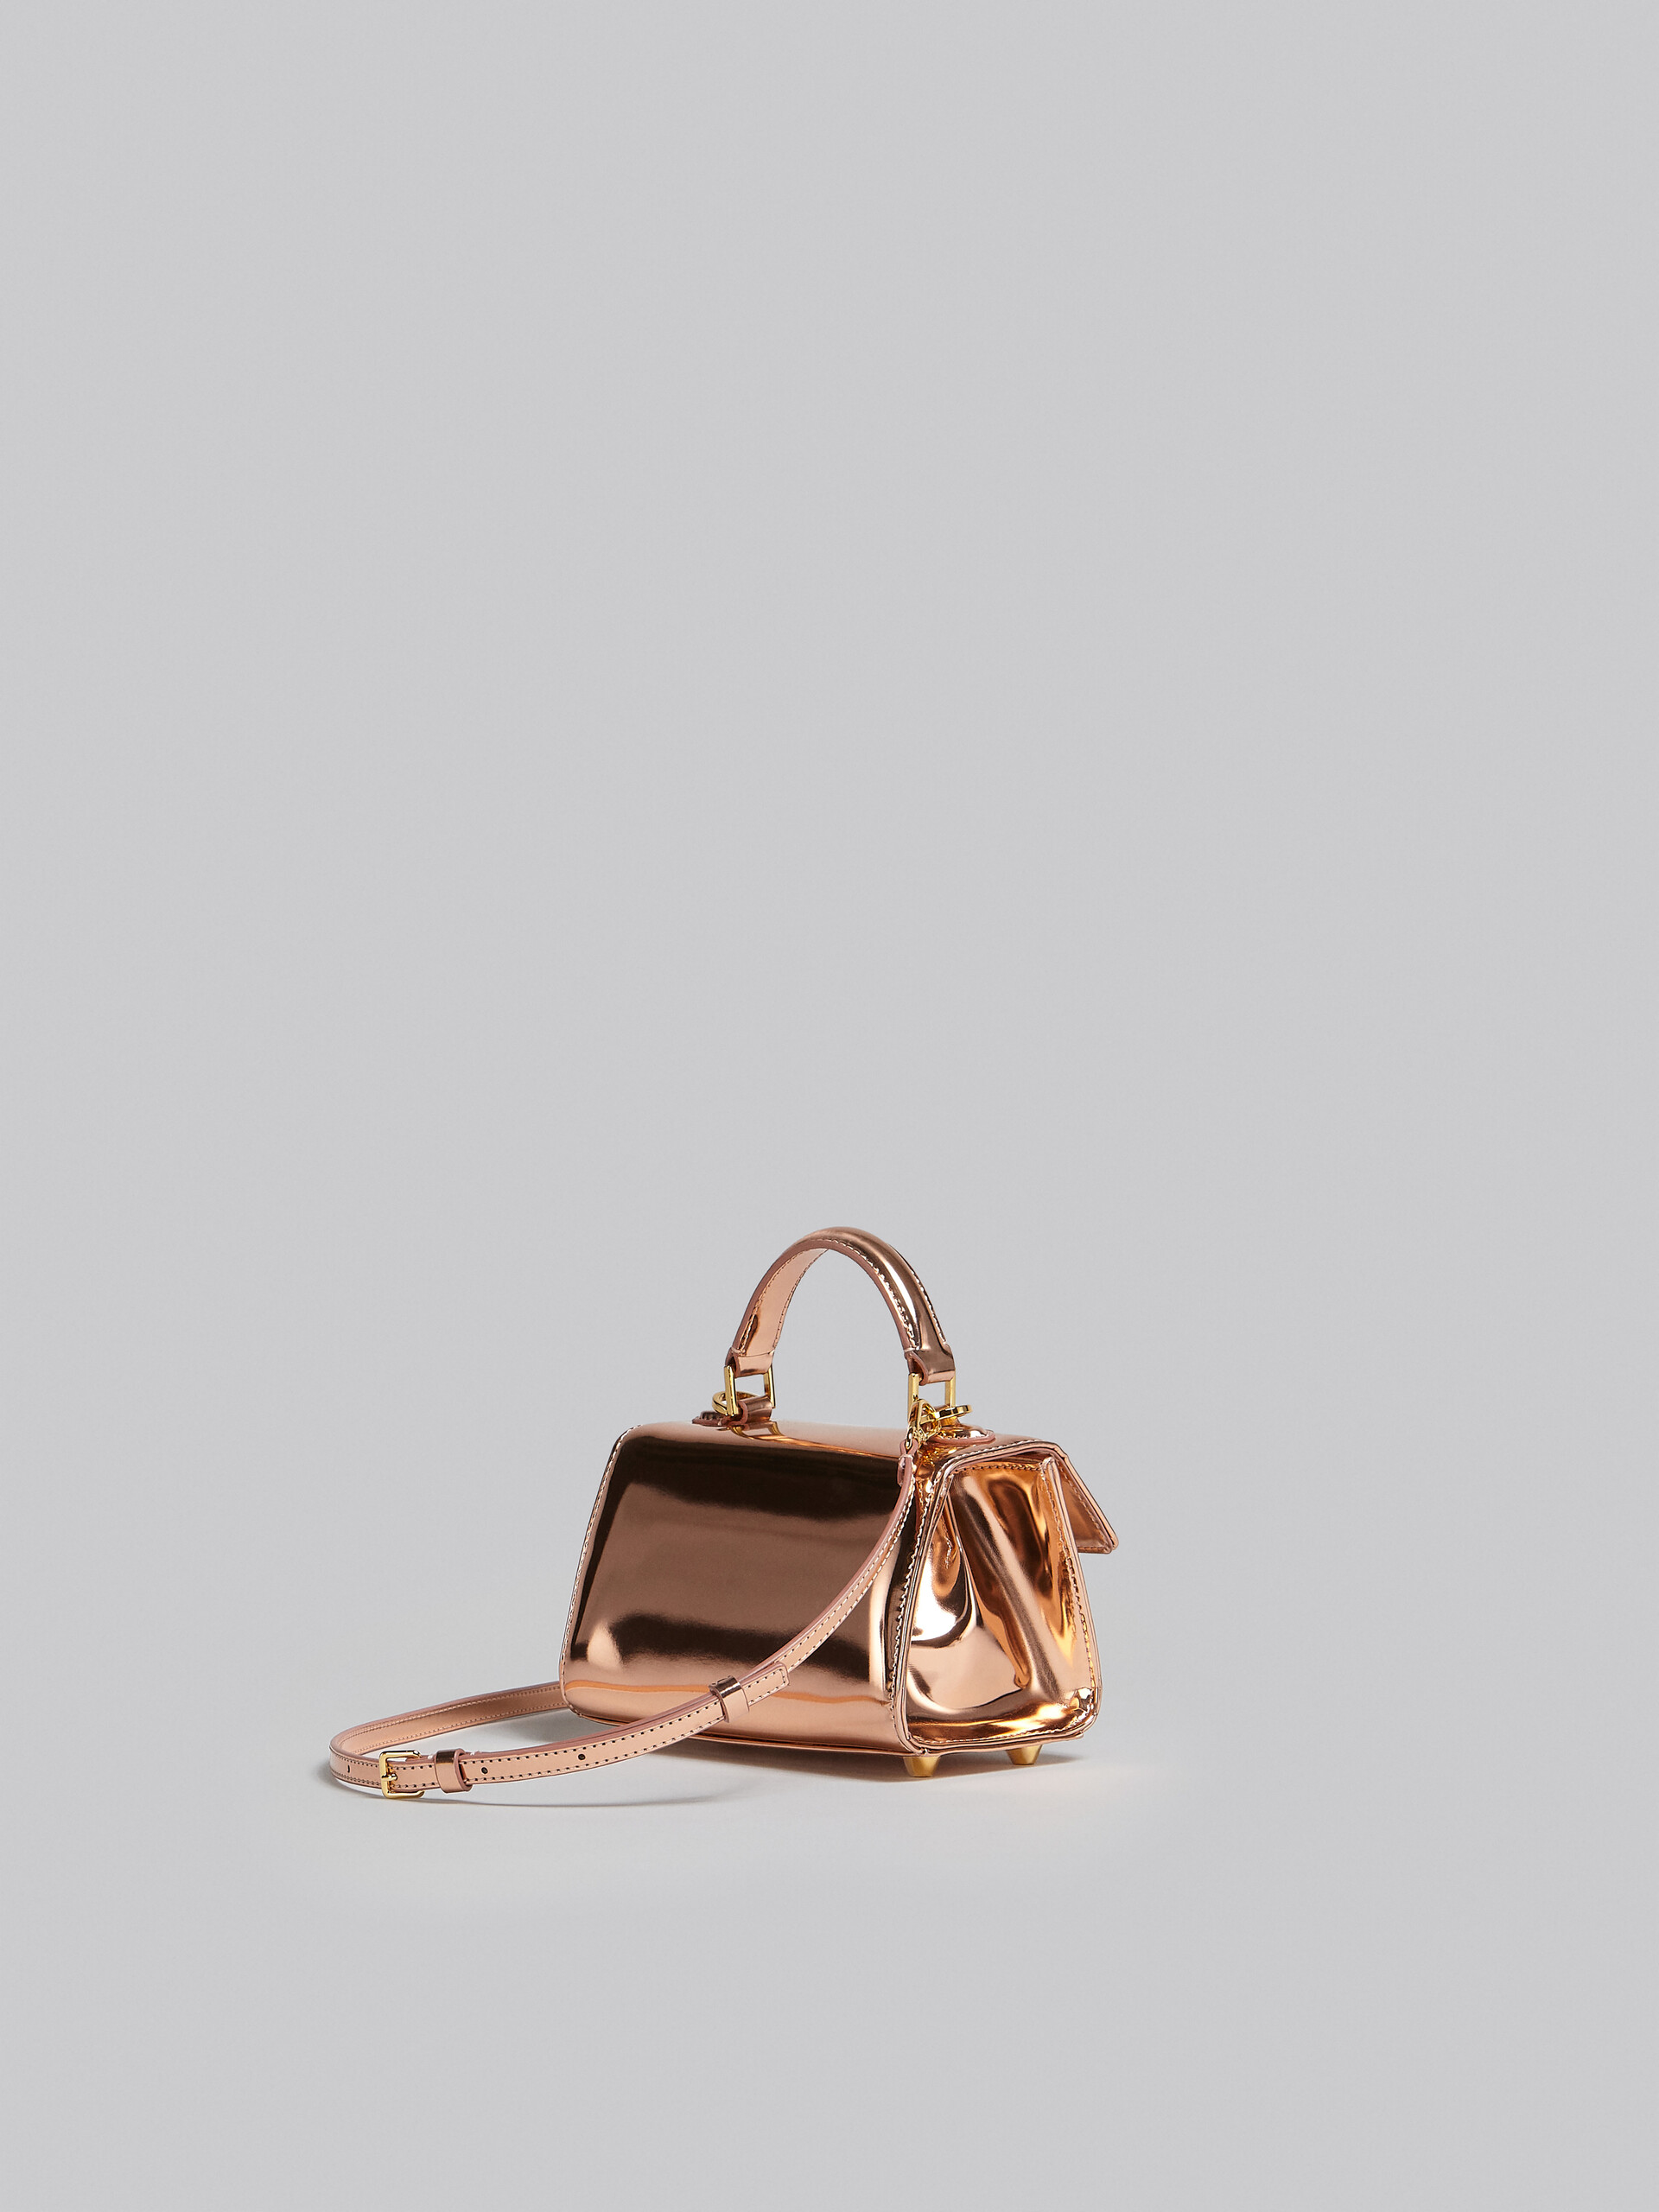 Relativity Bag Mini in pelle specchiata oro rosa - Borse a mano - Image 3